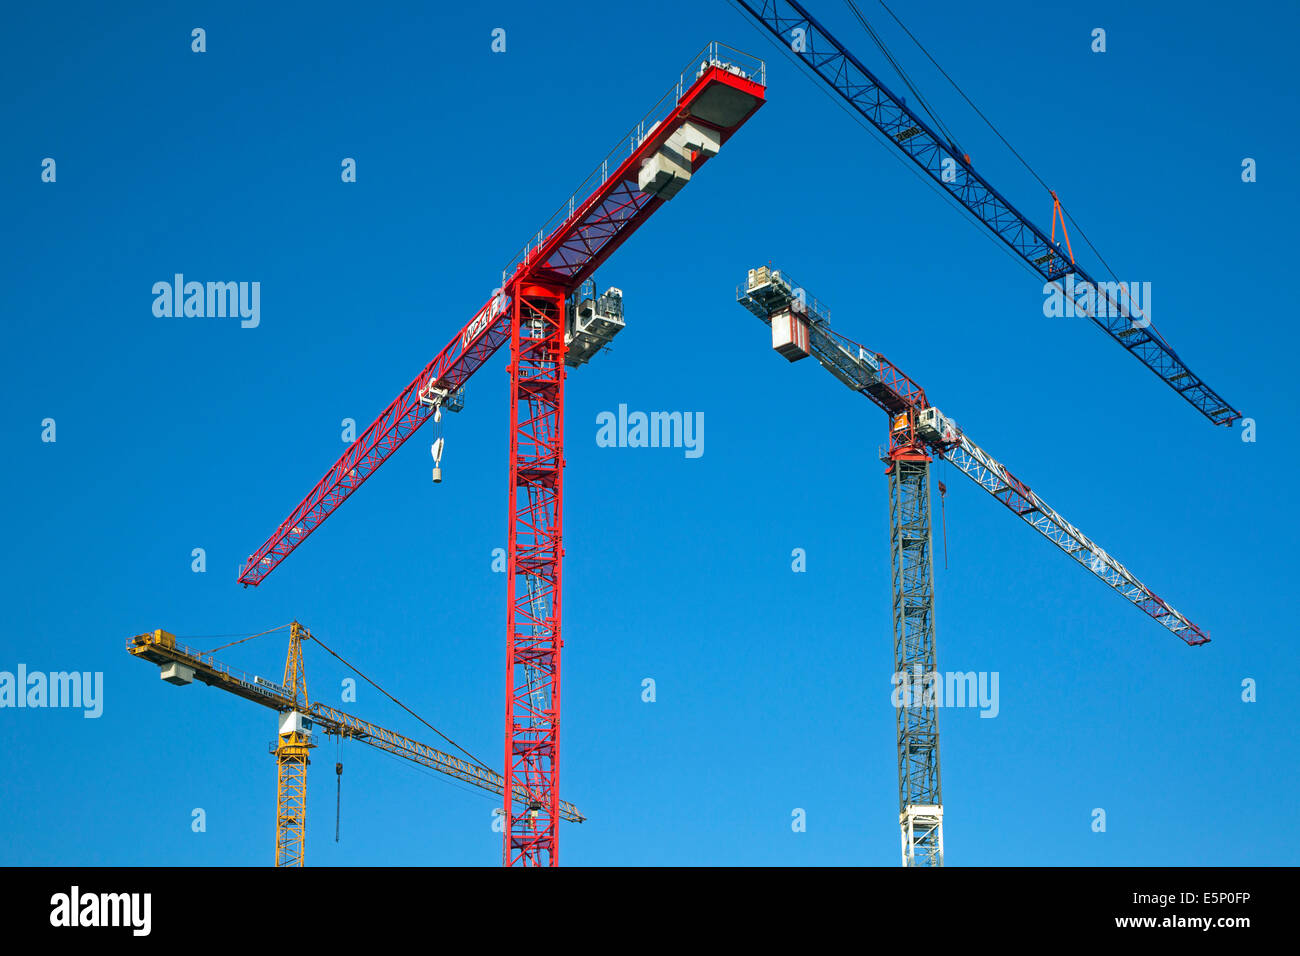 Les grues de construction / tower crane contre le ciel bleu Banque D'Images